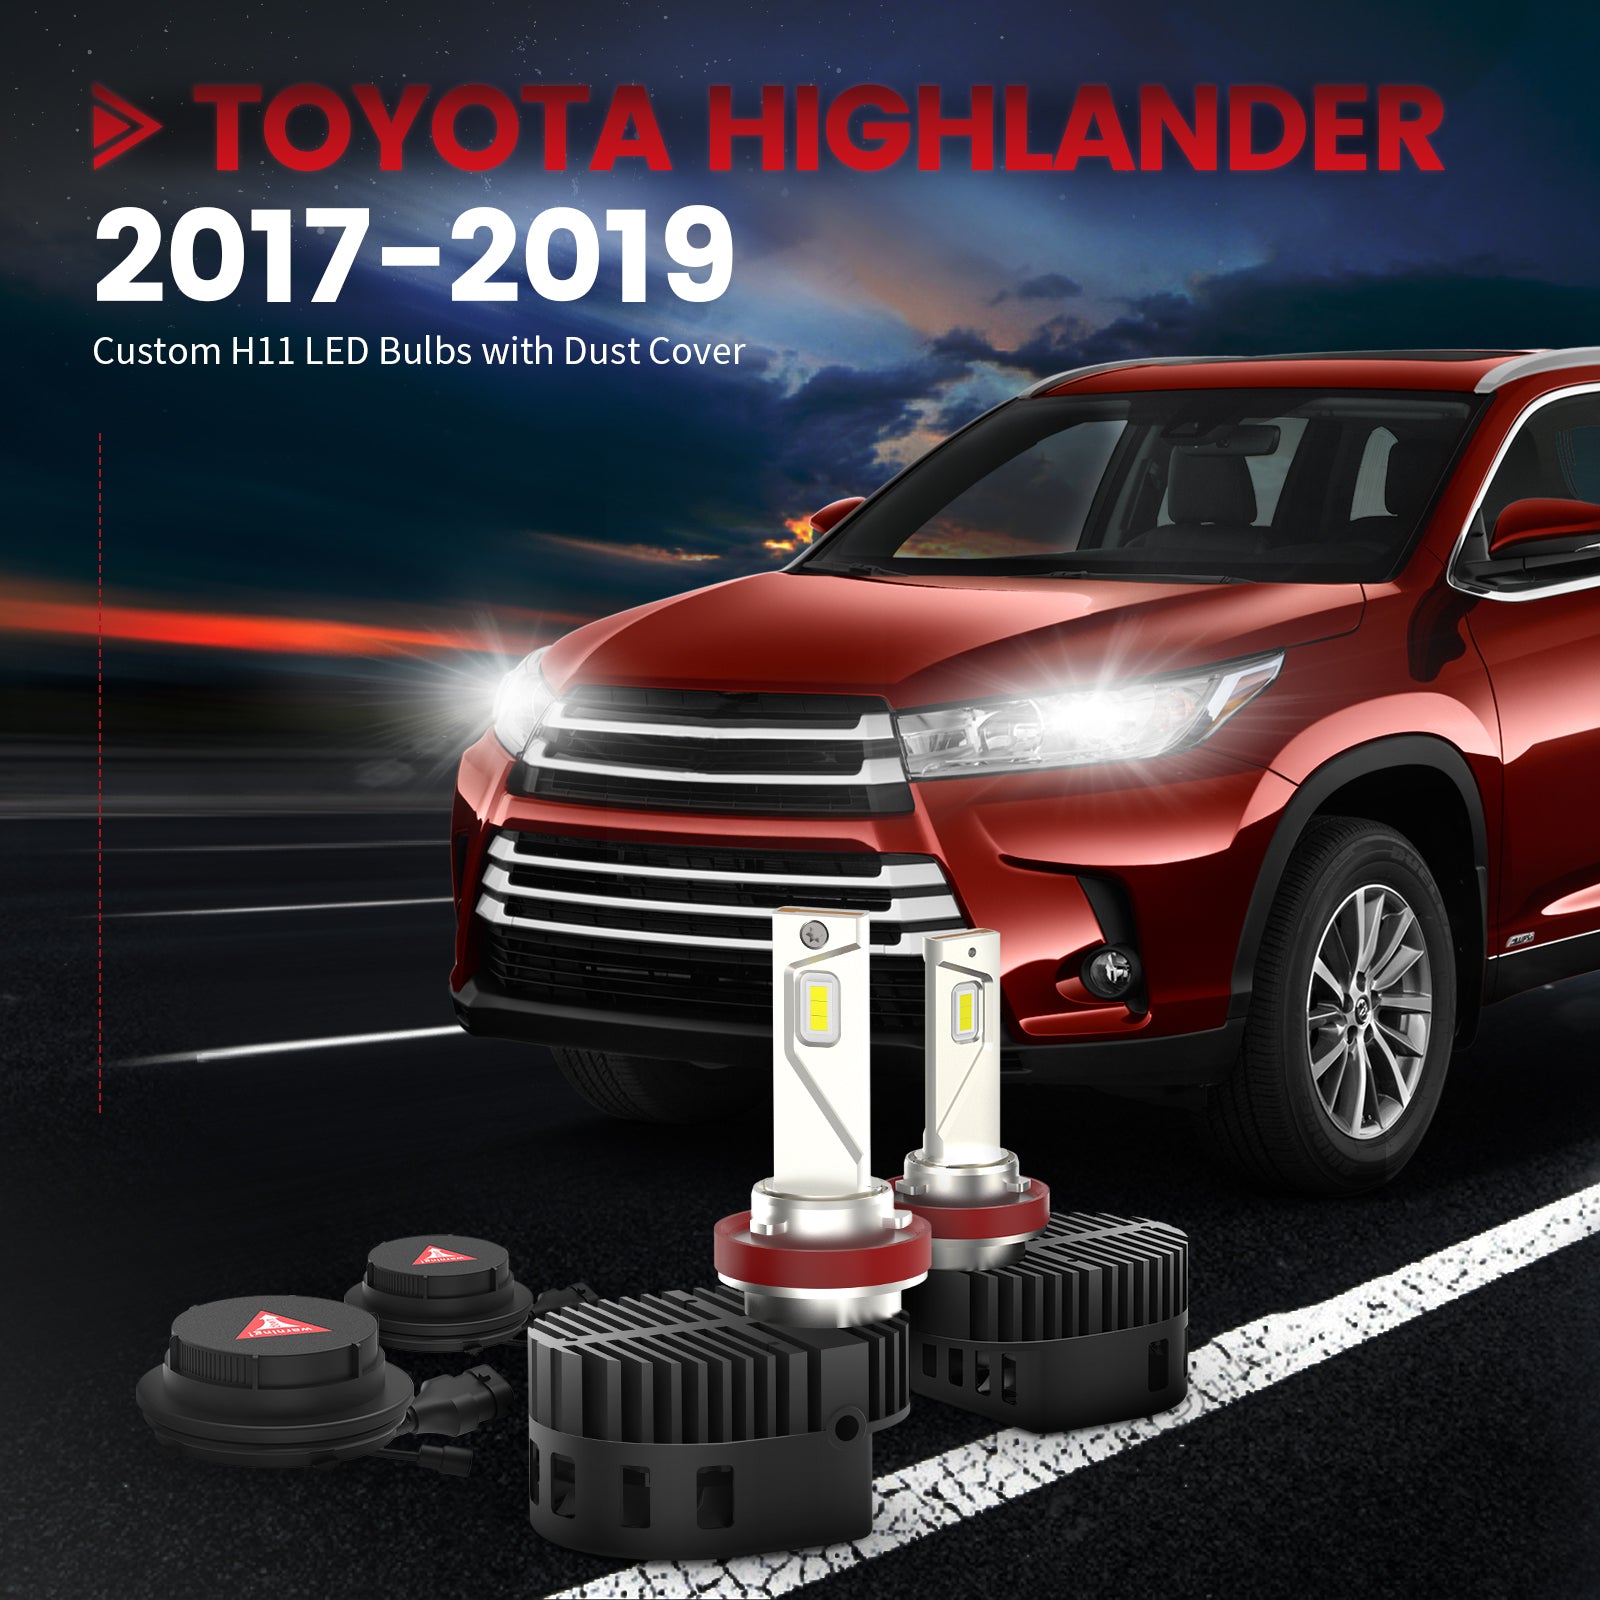 Toyota Highlander 2017-2019 Custom H11 LED Bulbs with Dust Cover